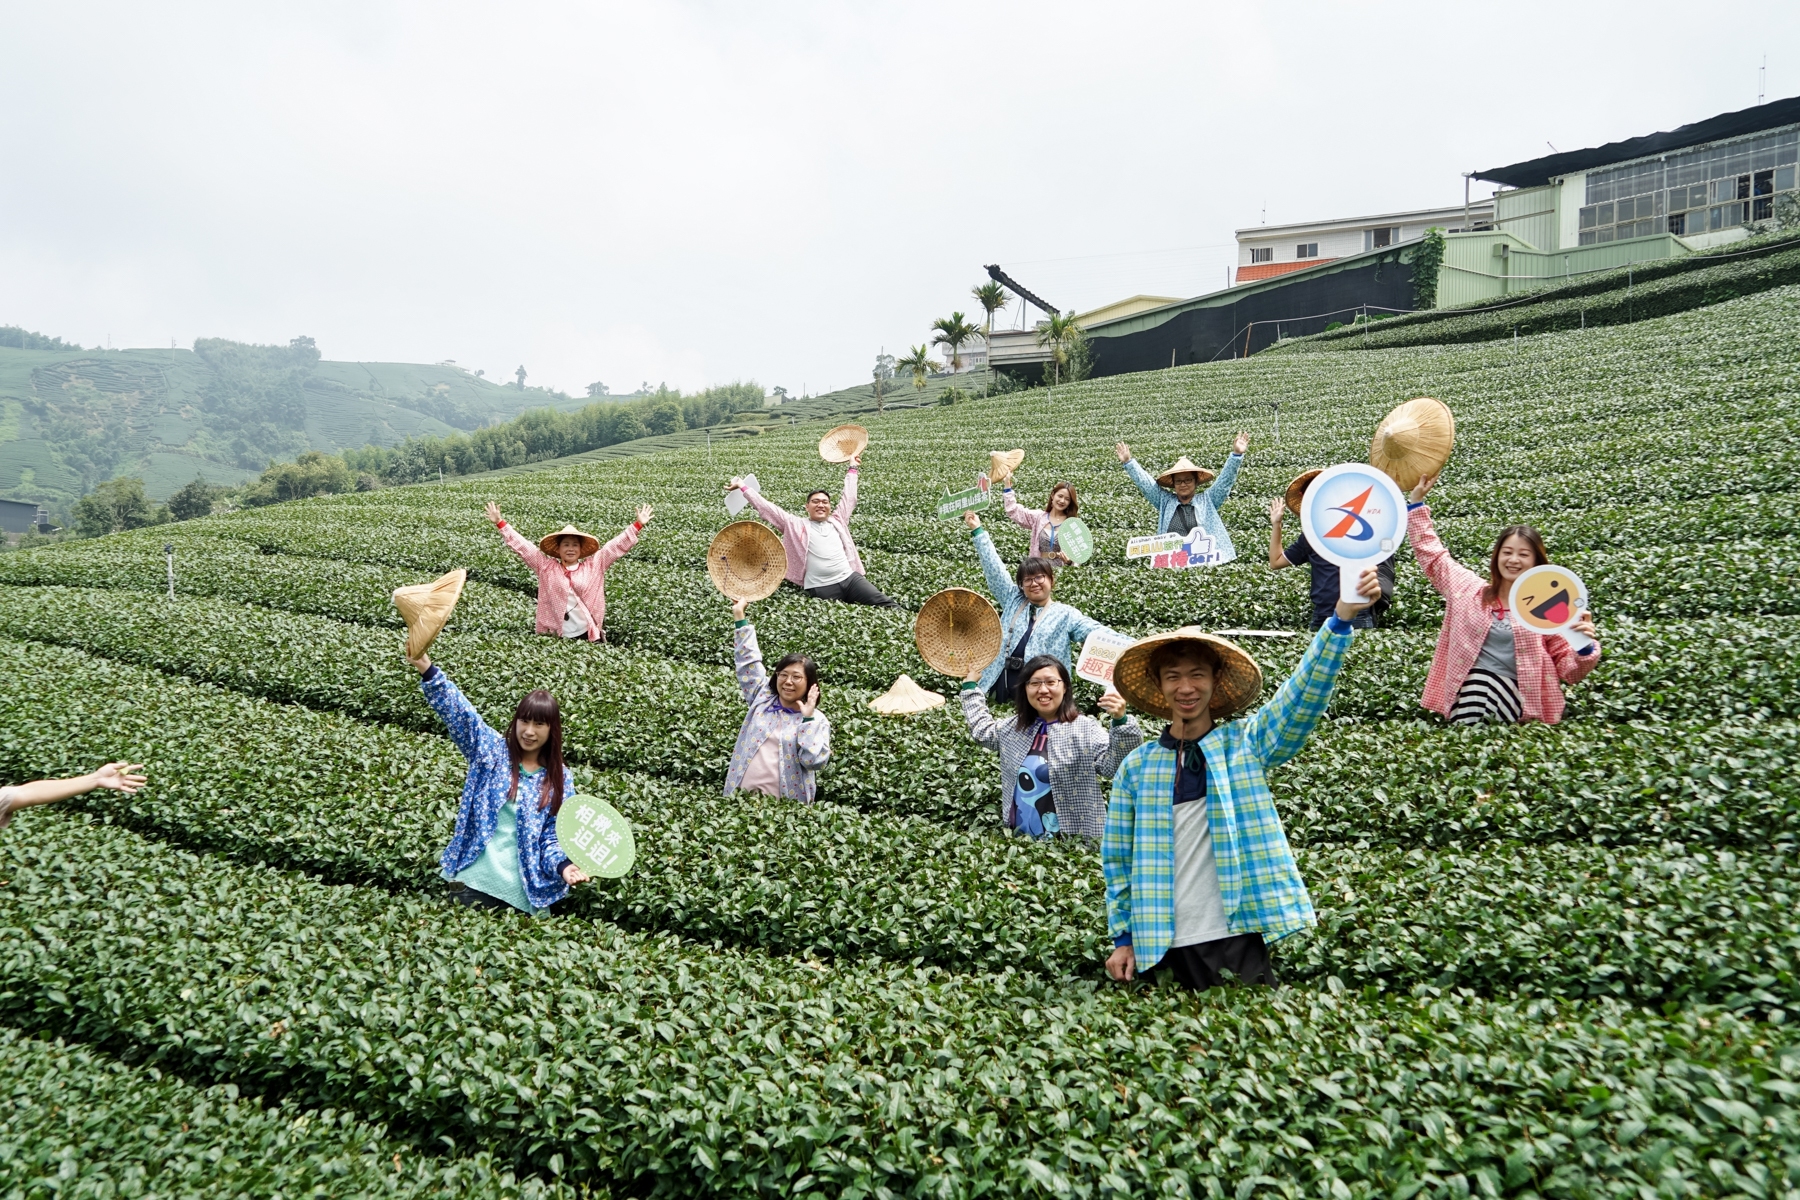 嘉義小旅行。瑞峰社區 瑞峰茶覺之旅 採茶 揉茶體驗、1314 觀景台 漫步瑞峰、茶席文化